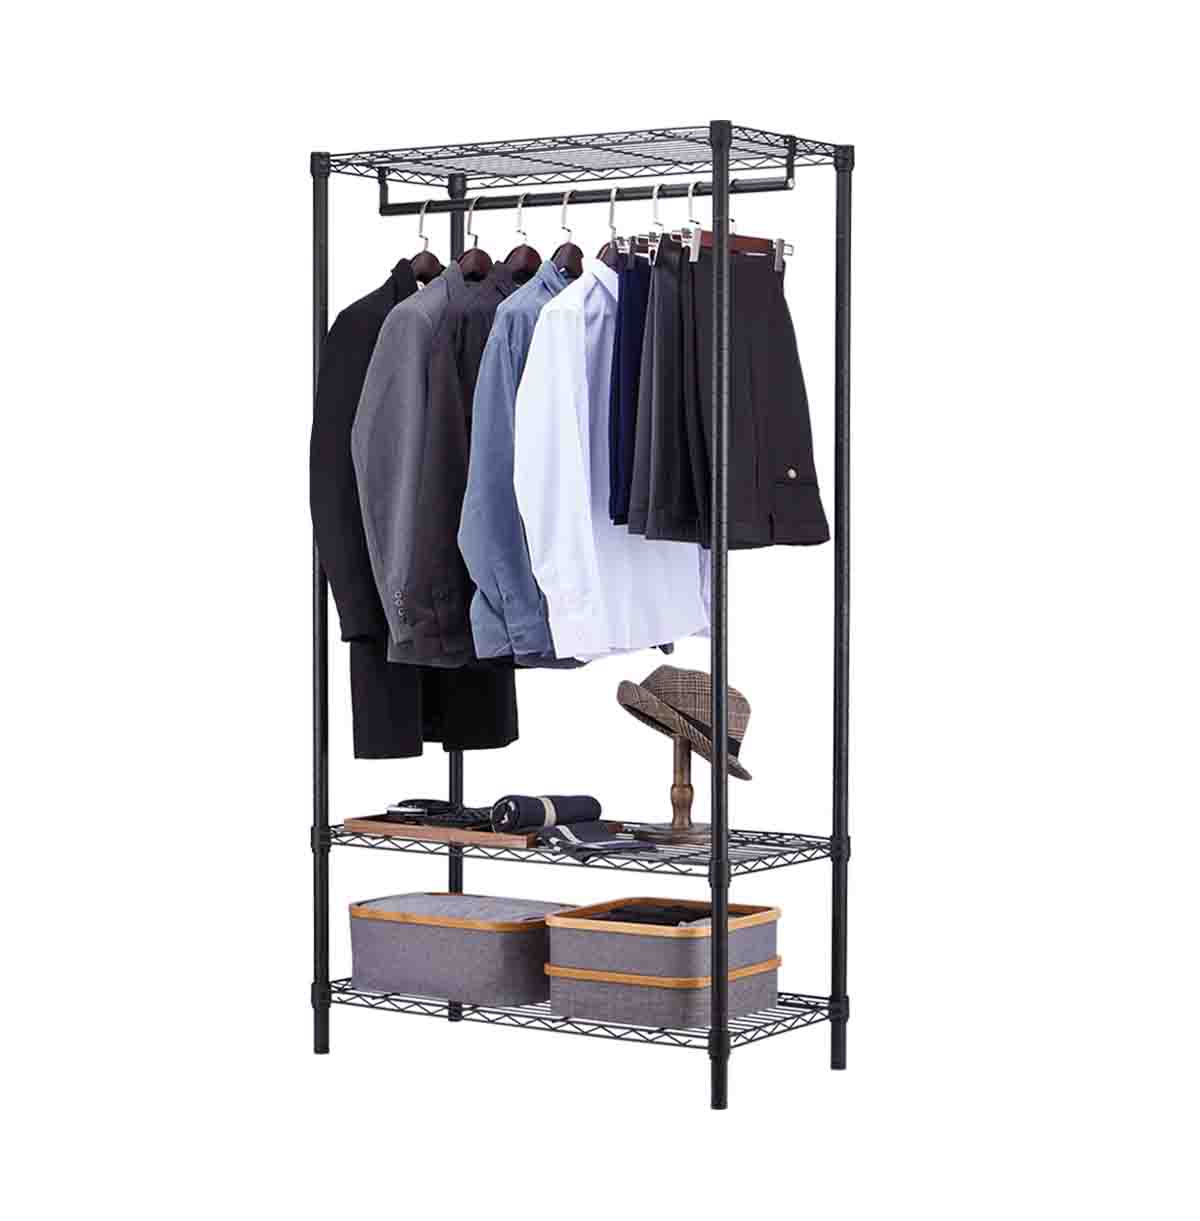 3 Tier Wire Closet Shelf Organizer With Hanging Rod / Freestanding Open Wardrobe Organizer / 36 Inch Wire Closet Shelf / 60 Inch Wire Closet Shelf